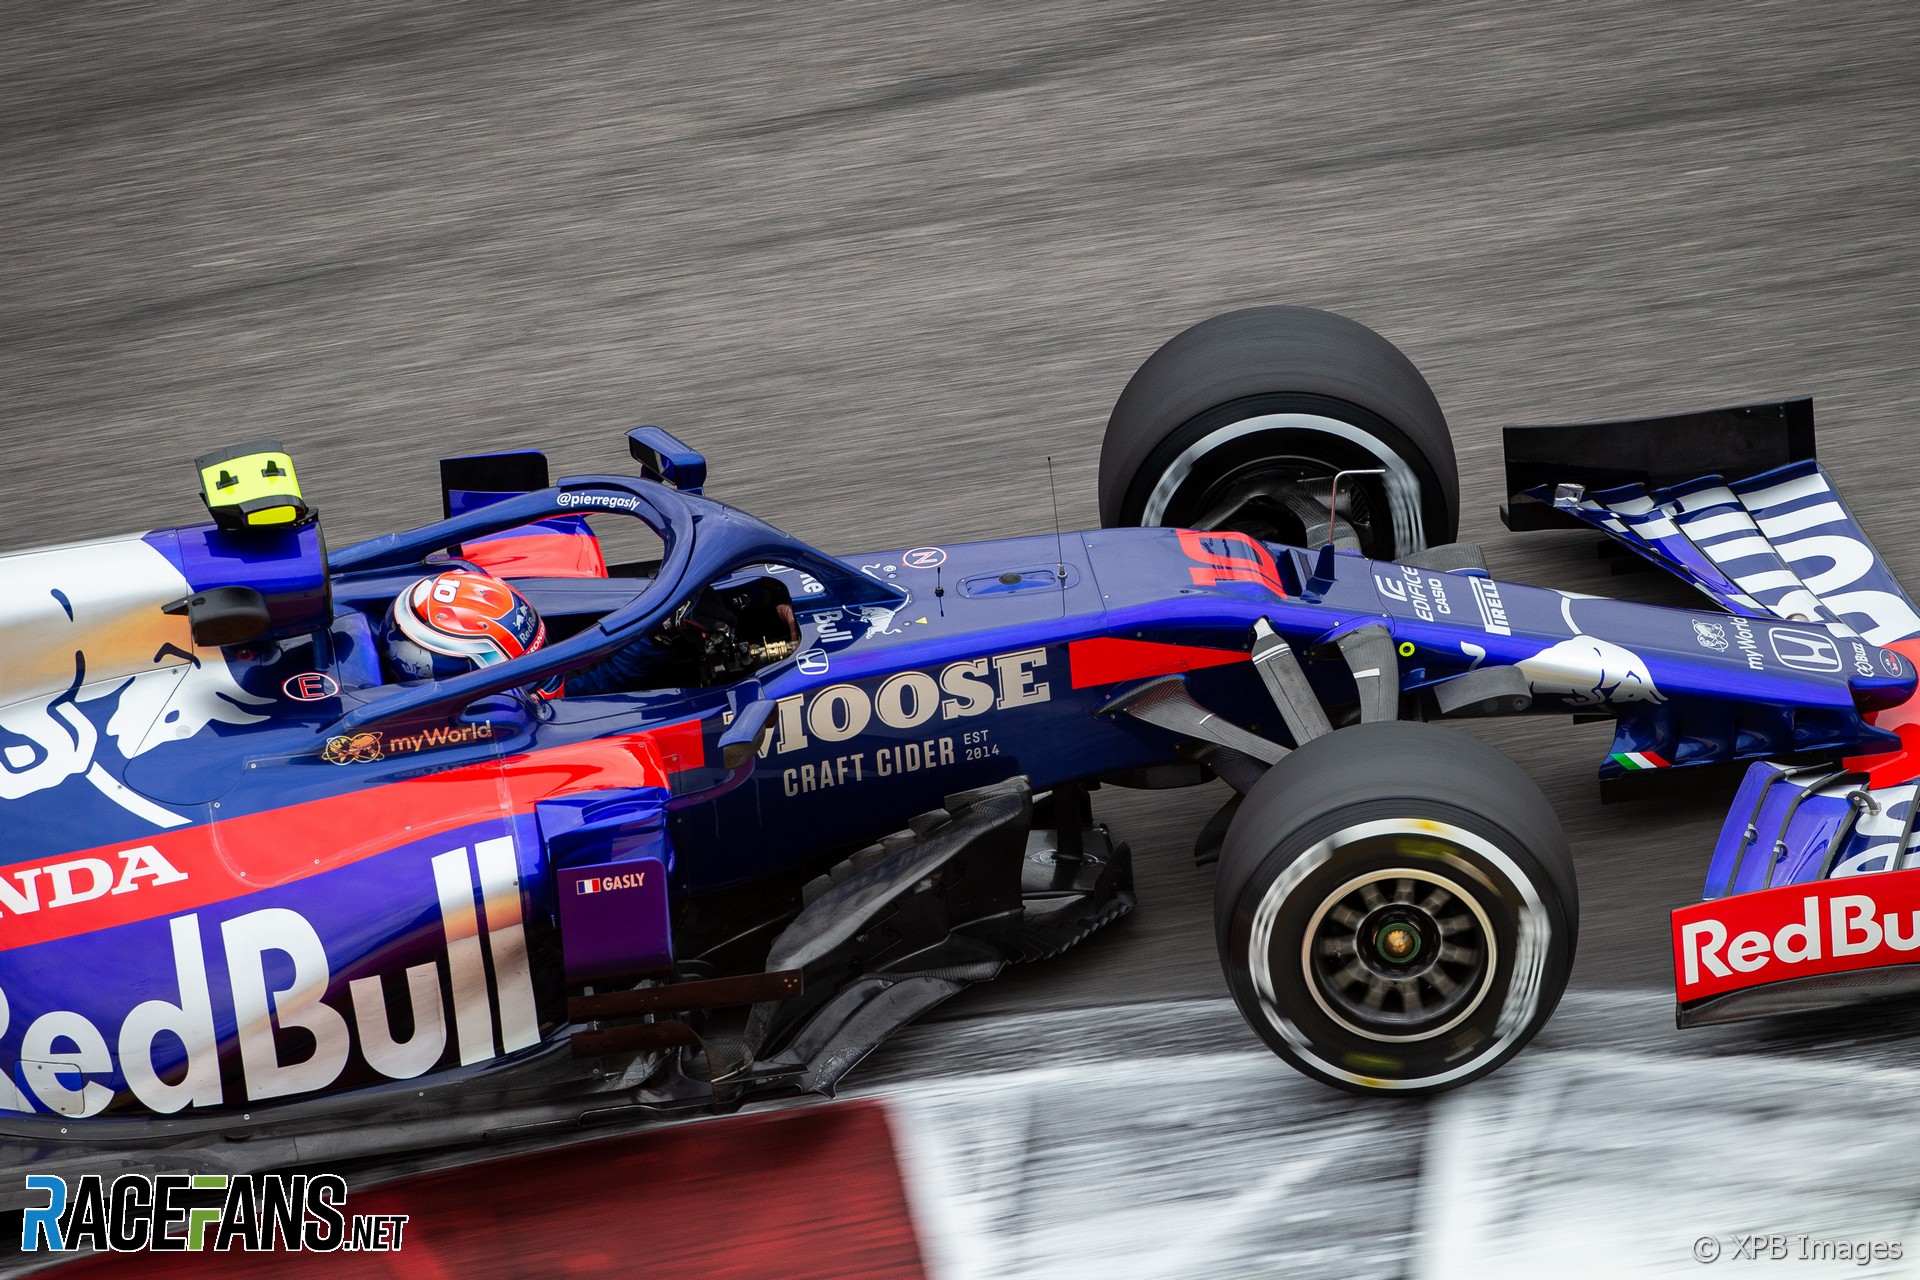 Pierre Gasly, Toro Rosso, Sochi Autodrom, 2019